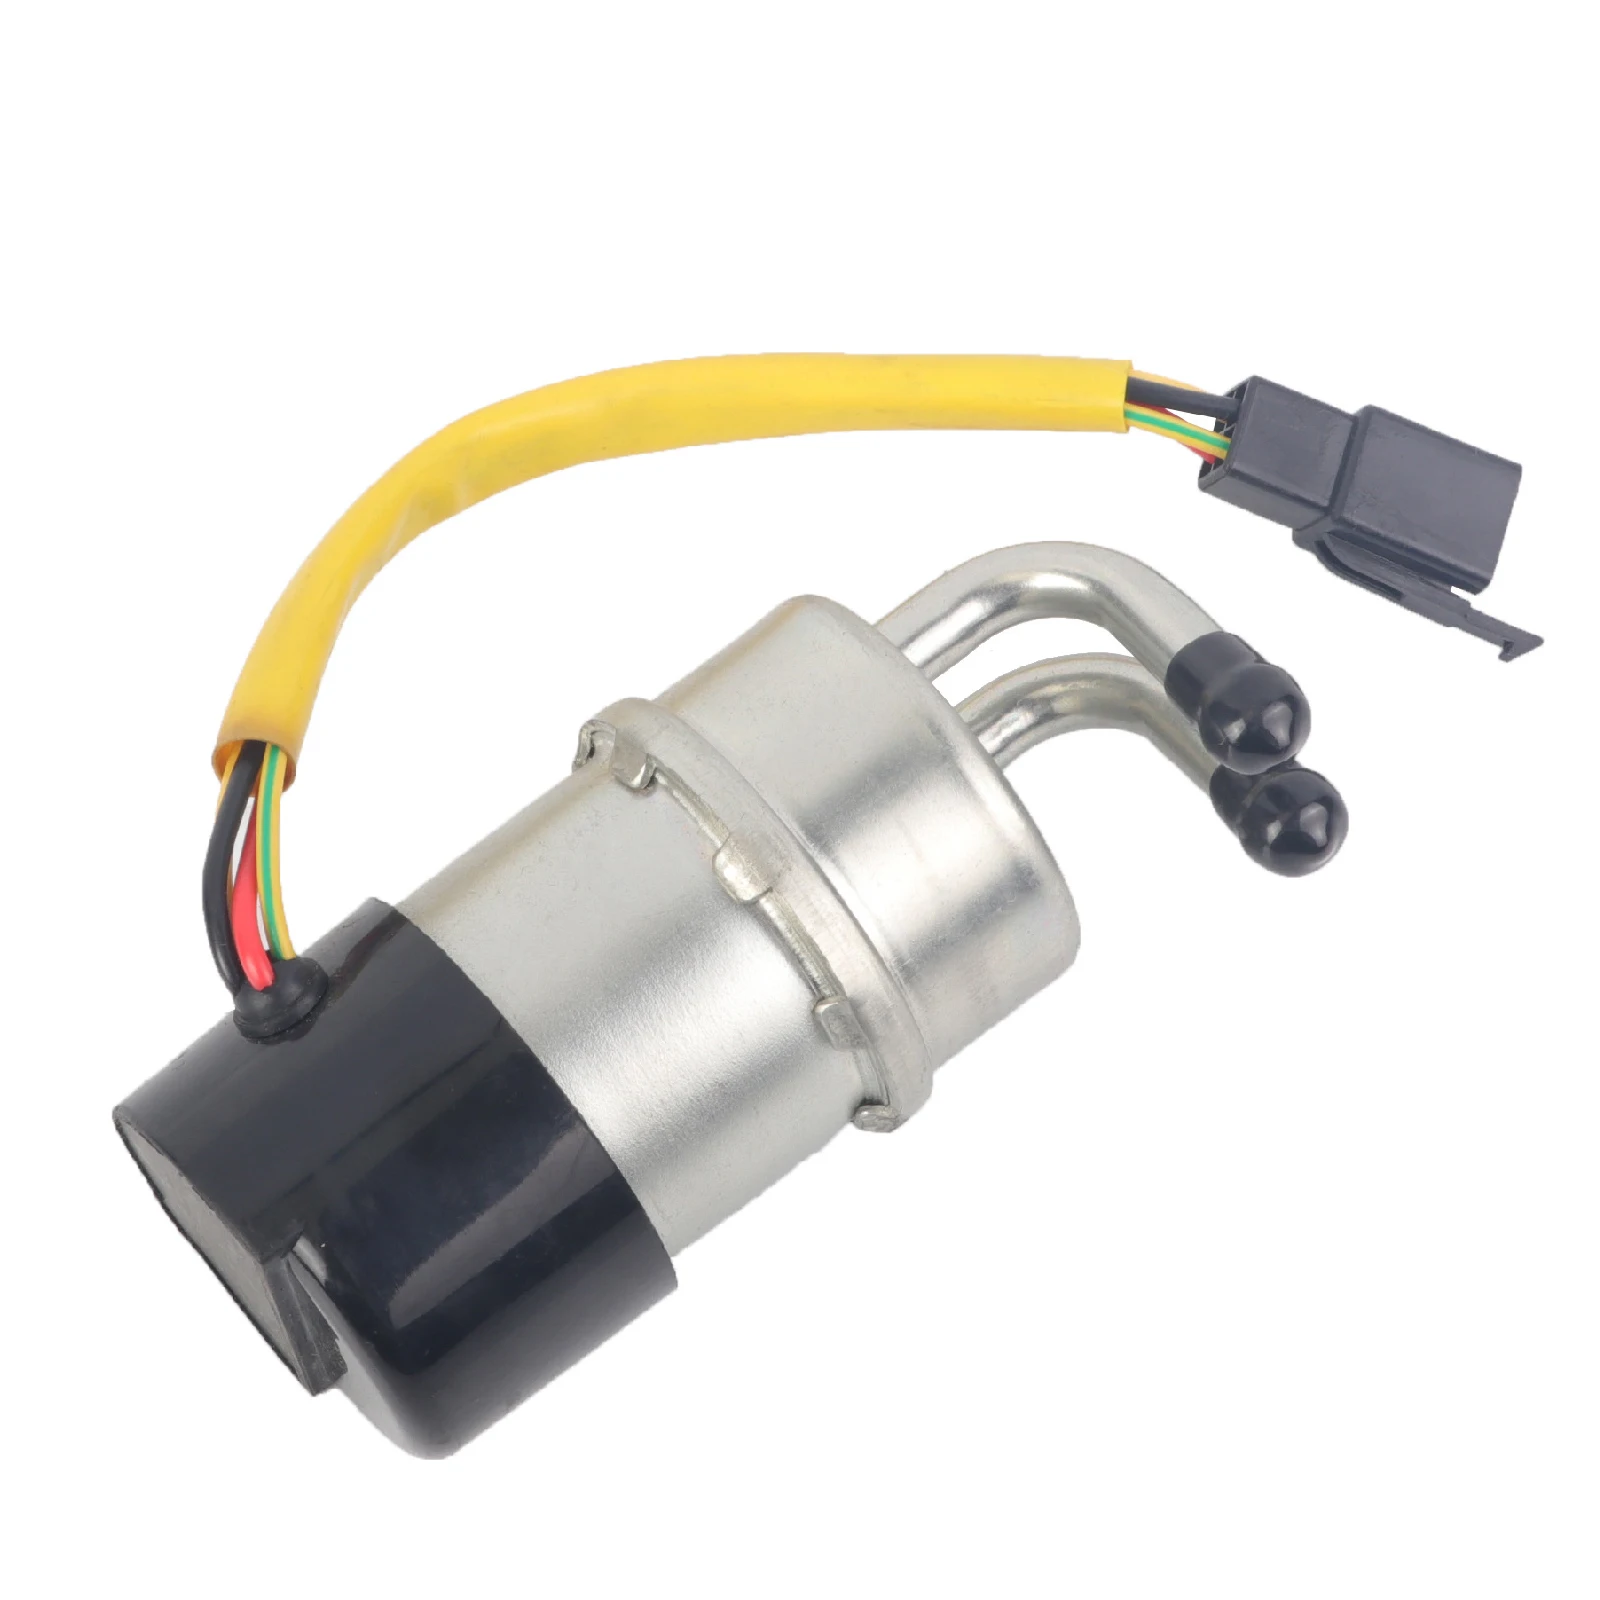 Fuel Pump Assembly, Compatible with Suzuki VS700 VS750 VS800 Intruder 1986-2009